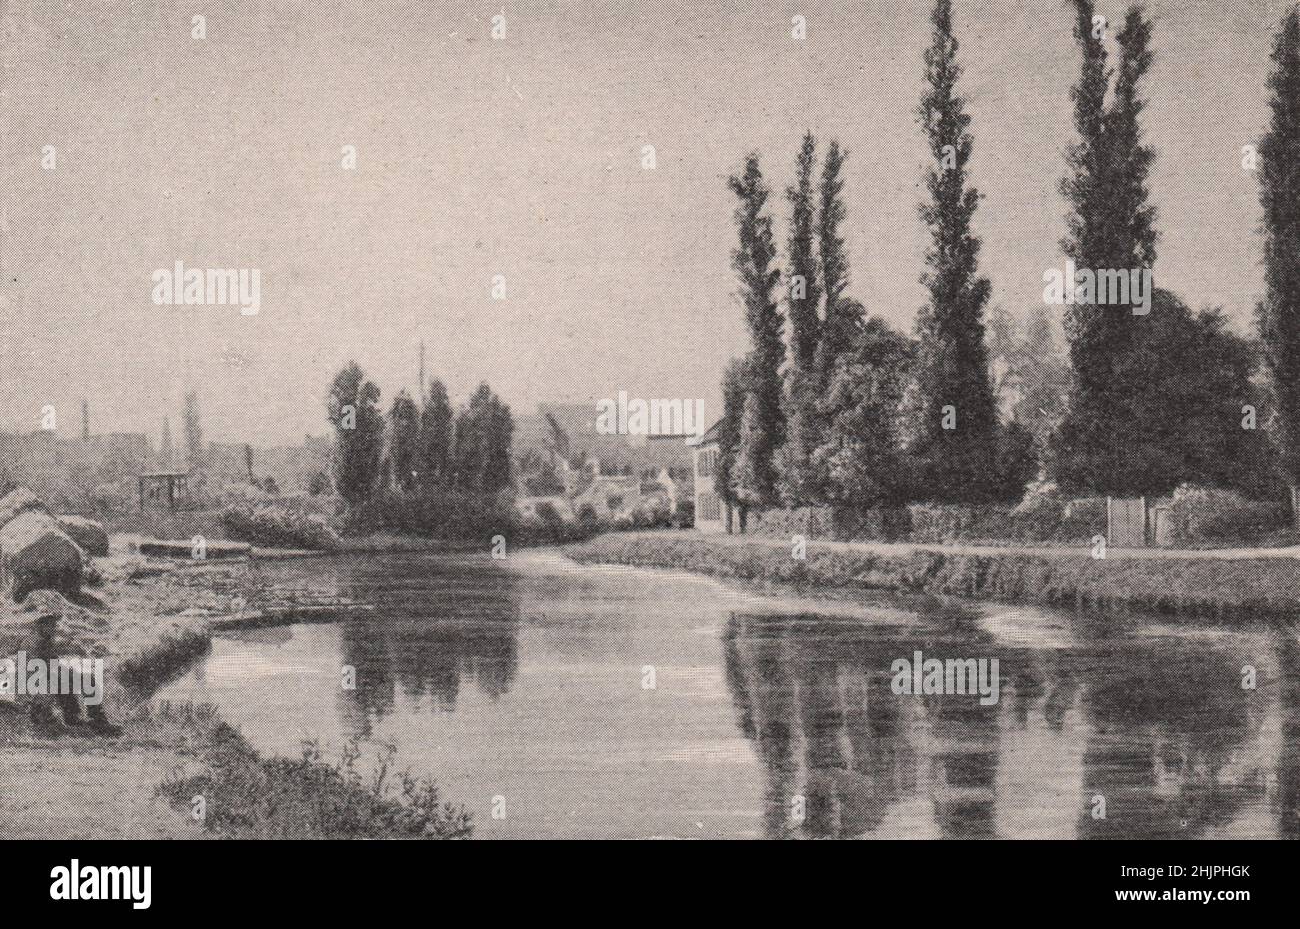 La scène de la rivière est telle que les maîtres flamands ont adoré peindre. Belgique (1923) Banque D'Images